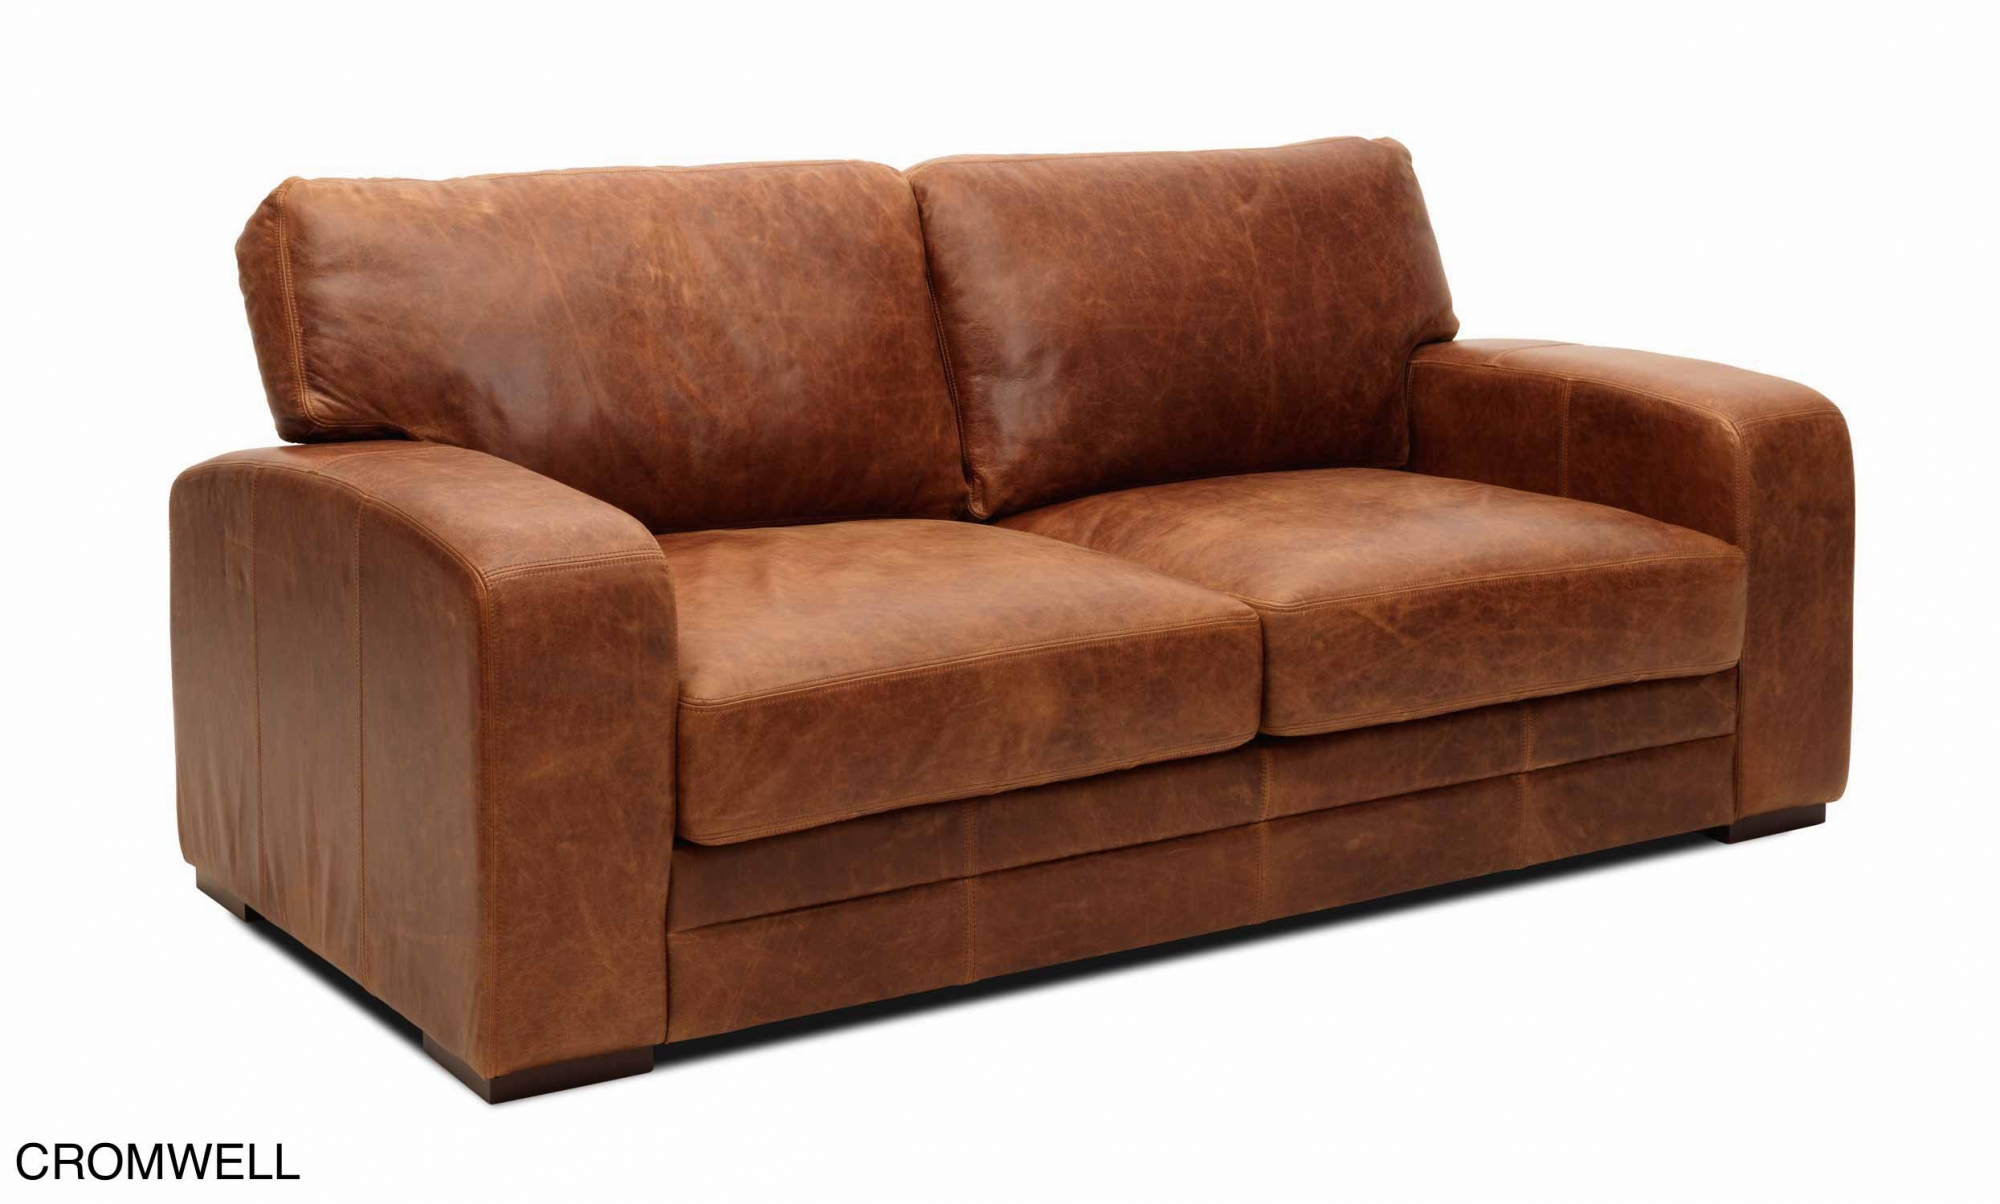 Sofa mini cổ điển Vintage đẹp - Chào mừng đến với thế giới của những chiếc sofa cổ điển đẹp đầy phong cách Vintage. Một chiếc sofa nhỏ gọn đủ để điền vào mọi không gian của bạn với sự thanh lịch và tinh tế. Bạn sẽ yêu thích chiếc sofa này với phong cách cổ điển độc đáo và chất lượng tuyệt vời.